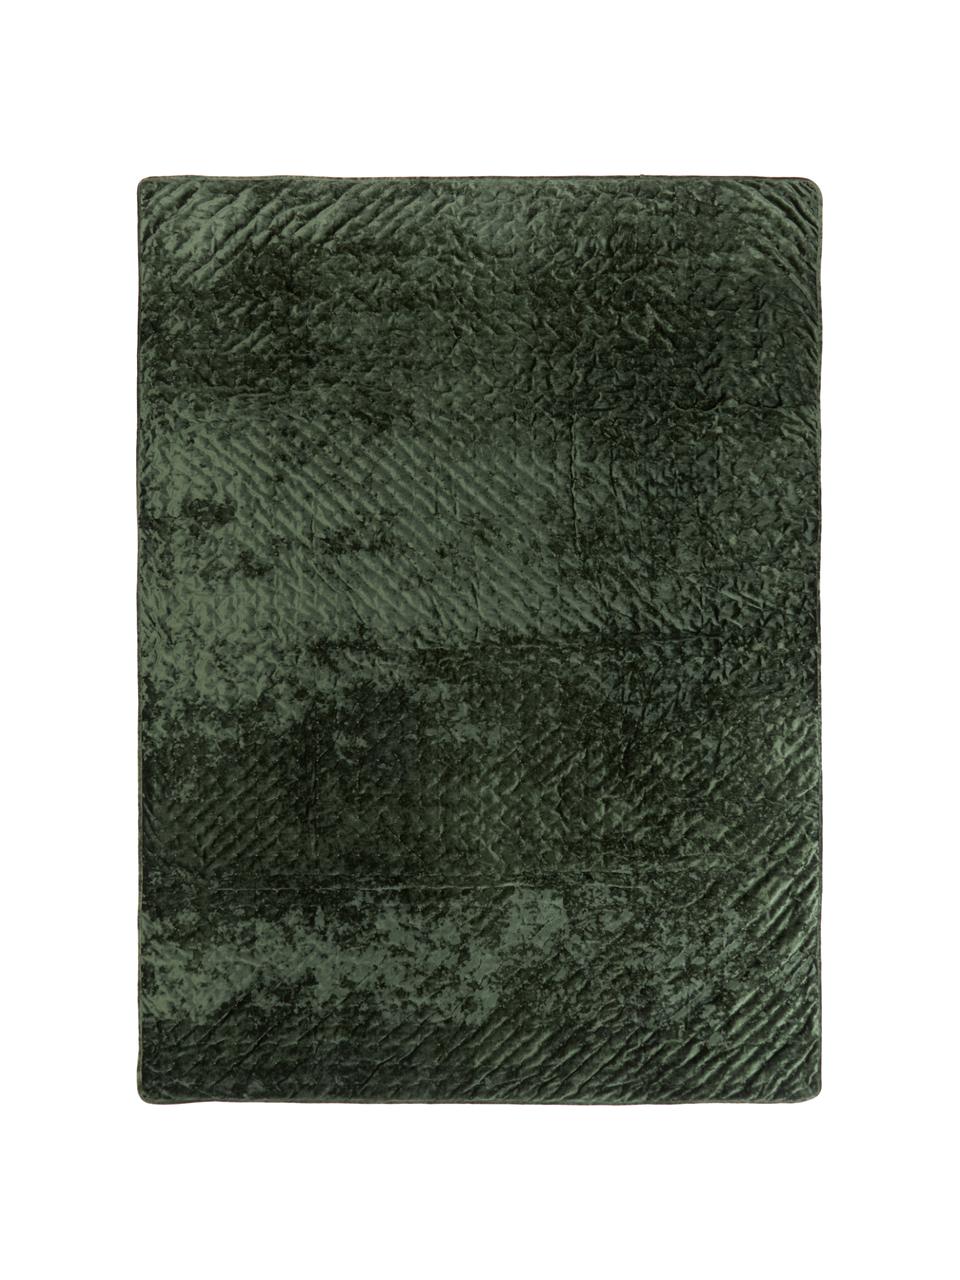 Samt-Tagesdecke Enid in Dunkelgrün, Samt (100 % Polyester)
Öko-Tex Standard 100, Klasse 1, Grün, B 180 x L 250 cm (für Betten bis 140 x 200 cm)